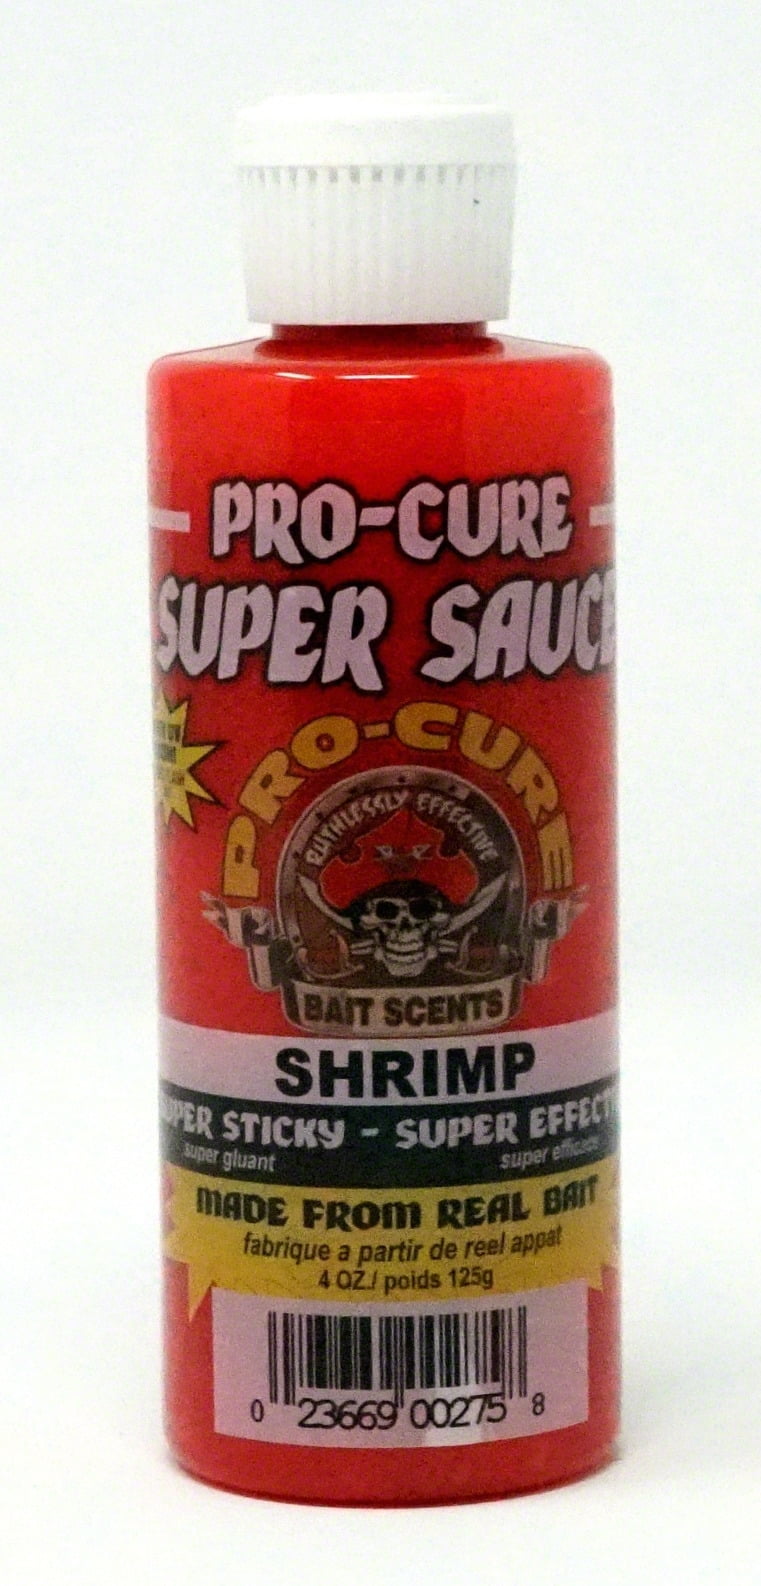 Pro-Cure Bait Sauce